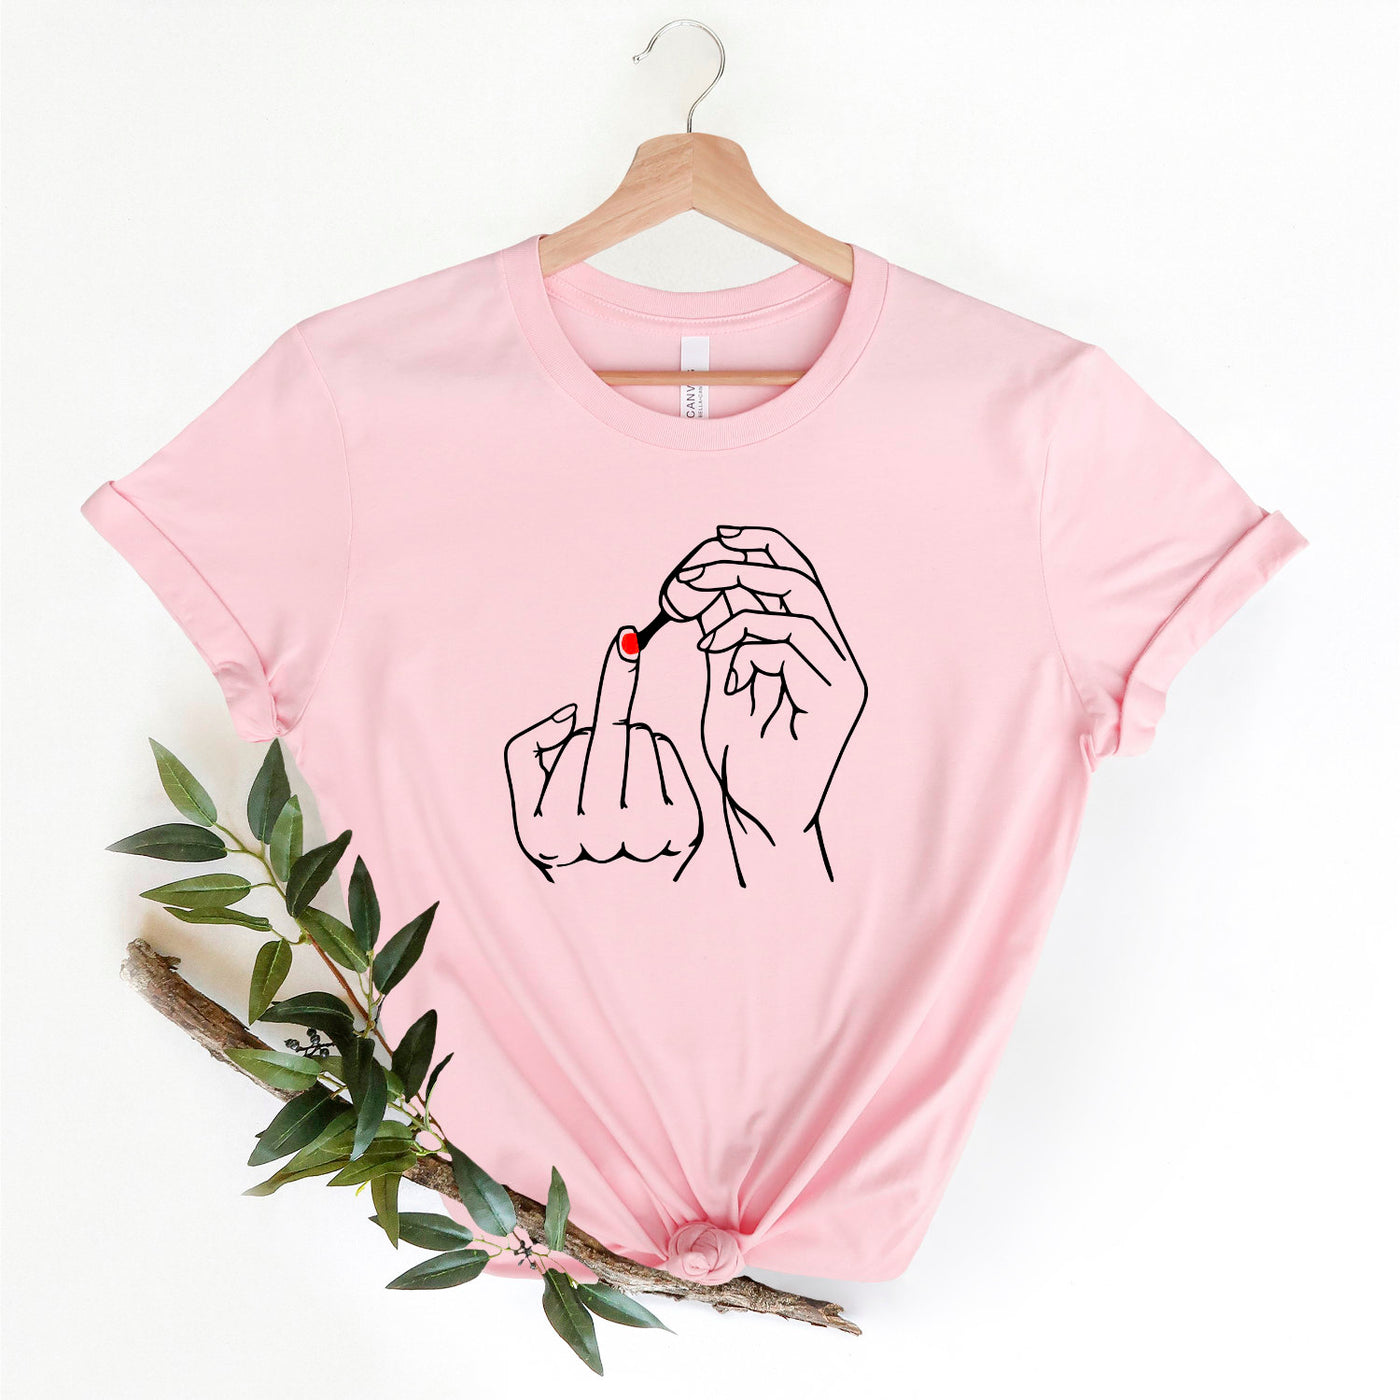 Feminist Shirt Feminismus T-Shirt Mittelfinger Nagellack Shirt Sommer tshirt Geschenk für Mädchen und beste Freundin Unisex Shirts